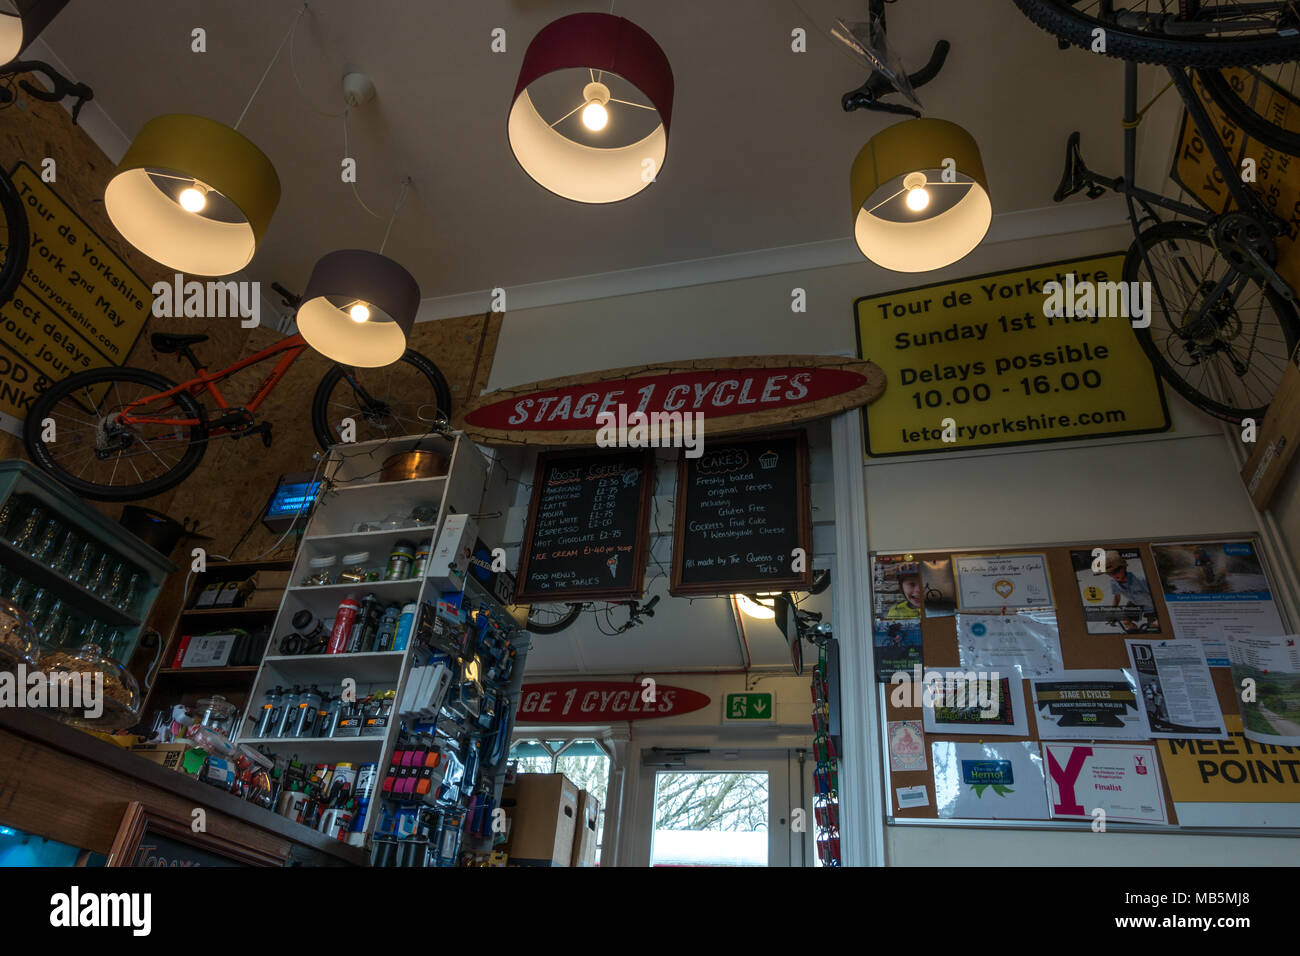 Innerhalb der Stufe 1 Zyklen Cafe, Firefox cafe in Hawes mit Tour de Yorkshire Erinnerungsstücke Stockfoto